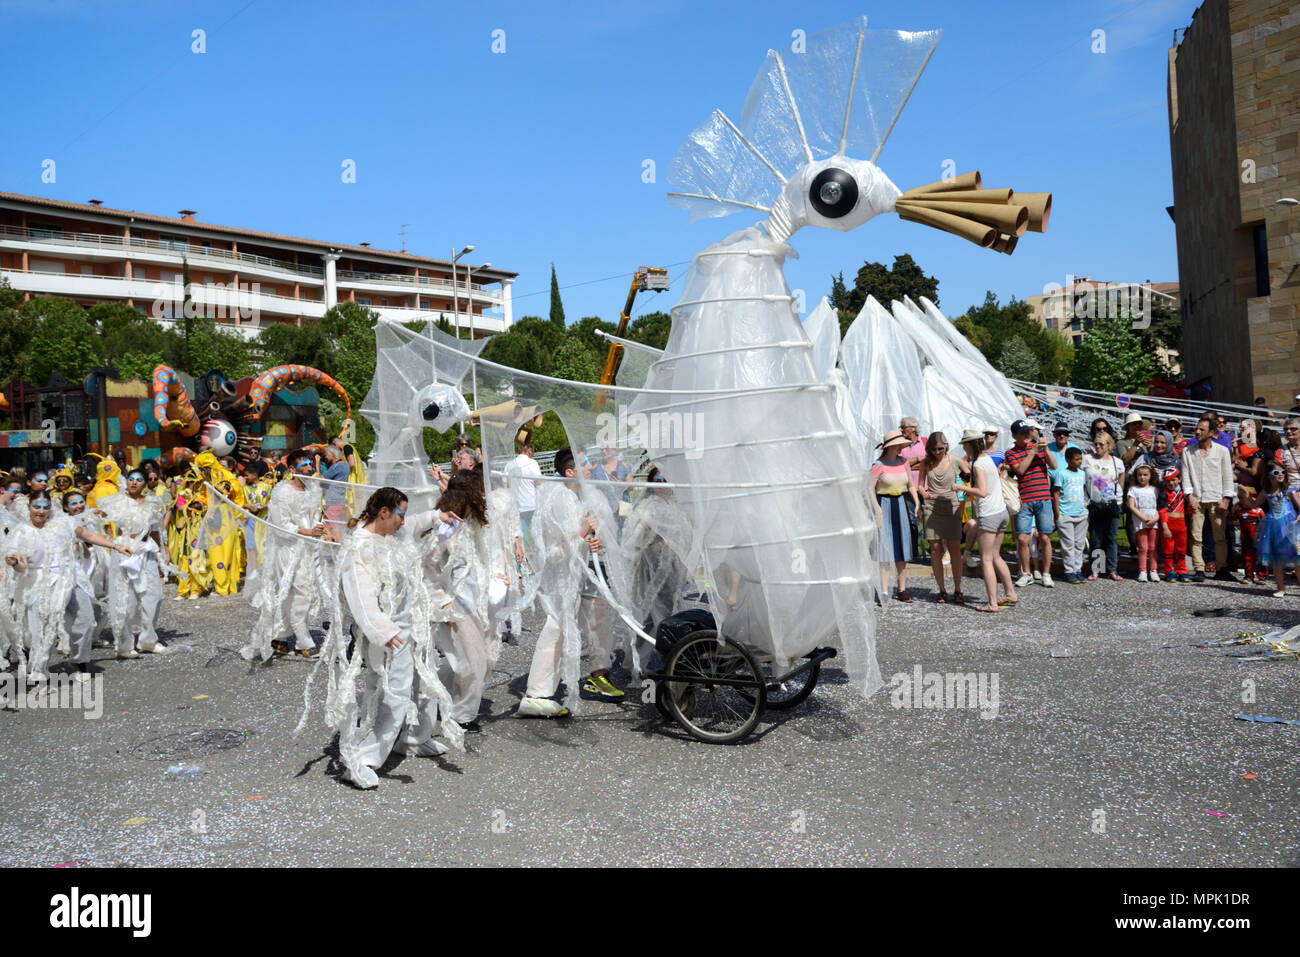 Karneval Float in der Form eines mythischen Vogel-ähnlichen Kreatur auf die Räder der alten Kinderwagen an der Spring Carnival Aix-en-Provence Provence Frankreich Stockfoto